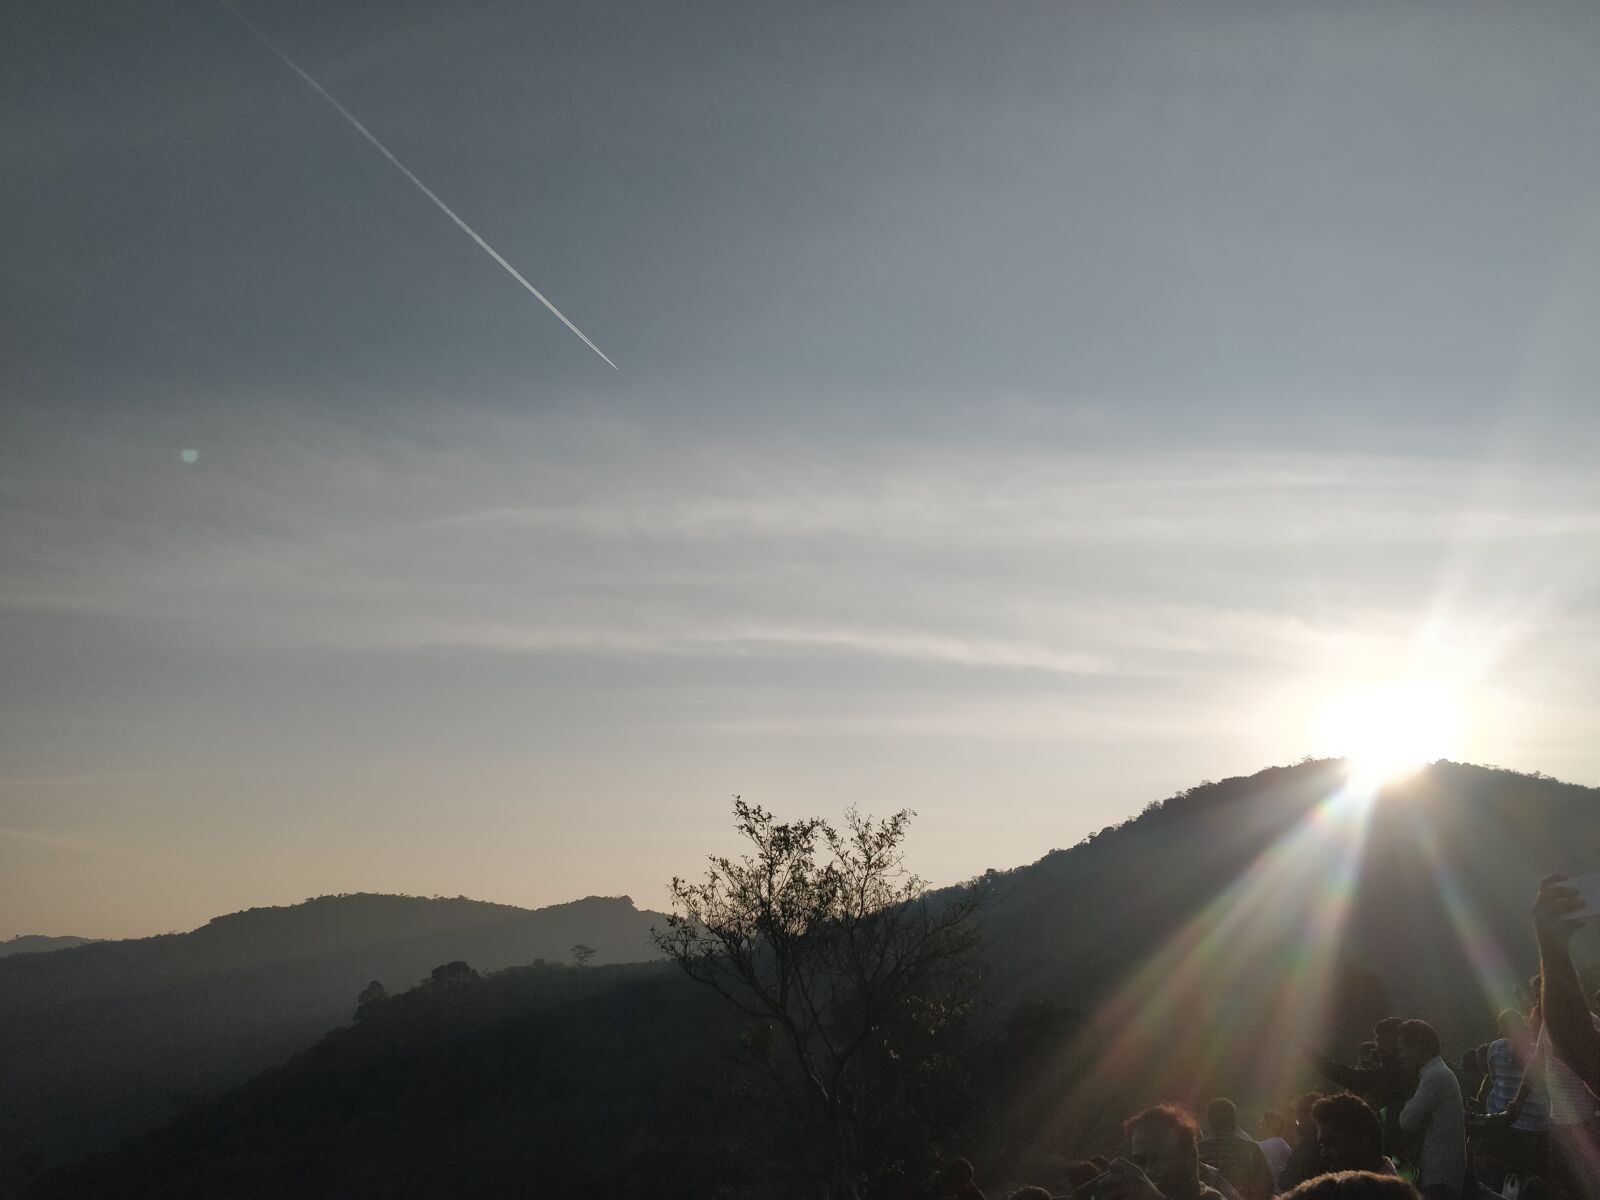 OnePlus 5T sample photo. Sunrise, morning, hi photography